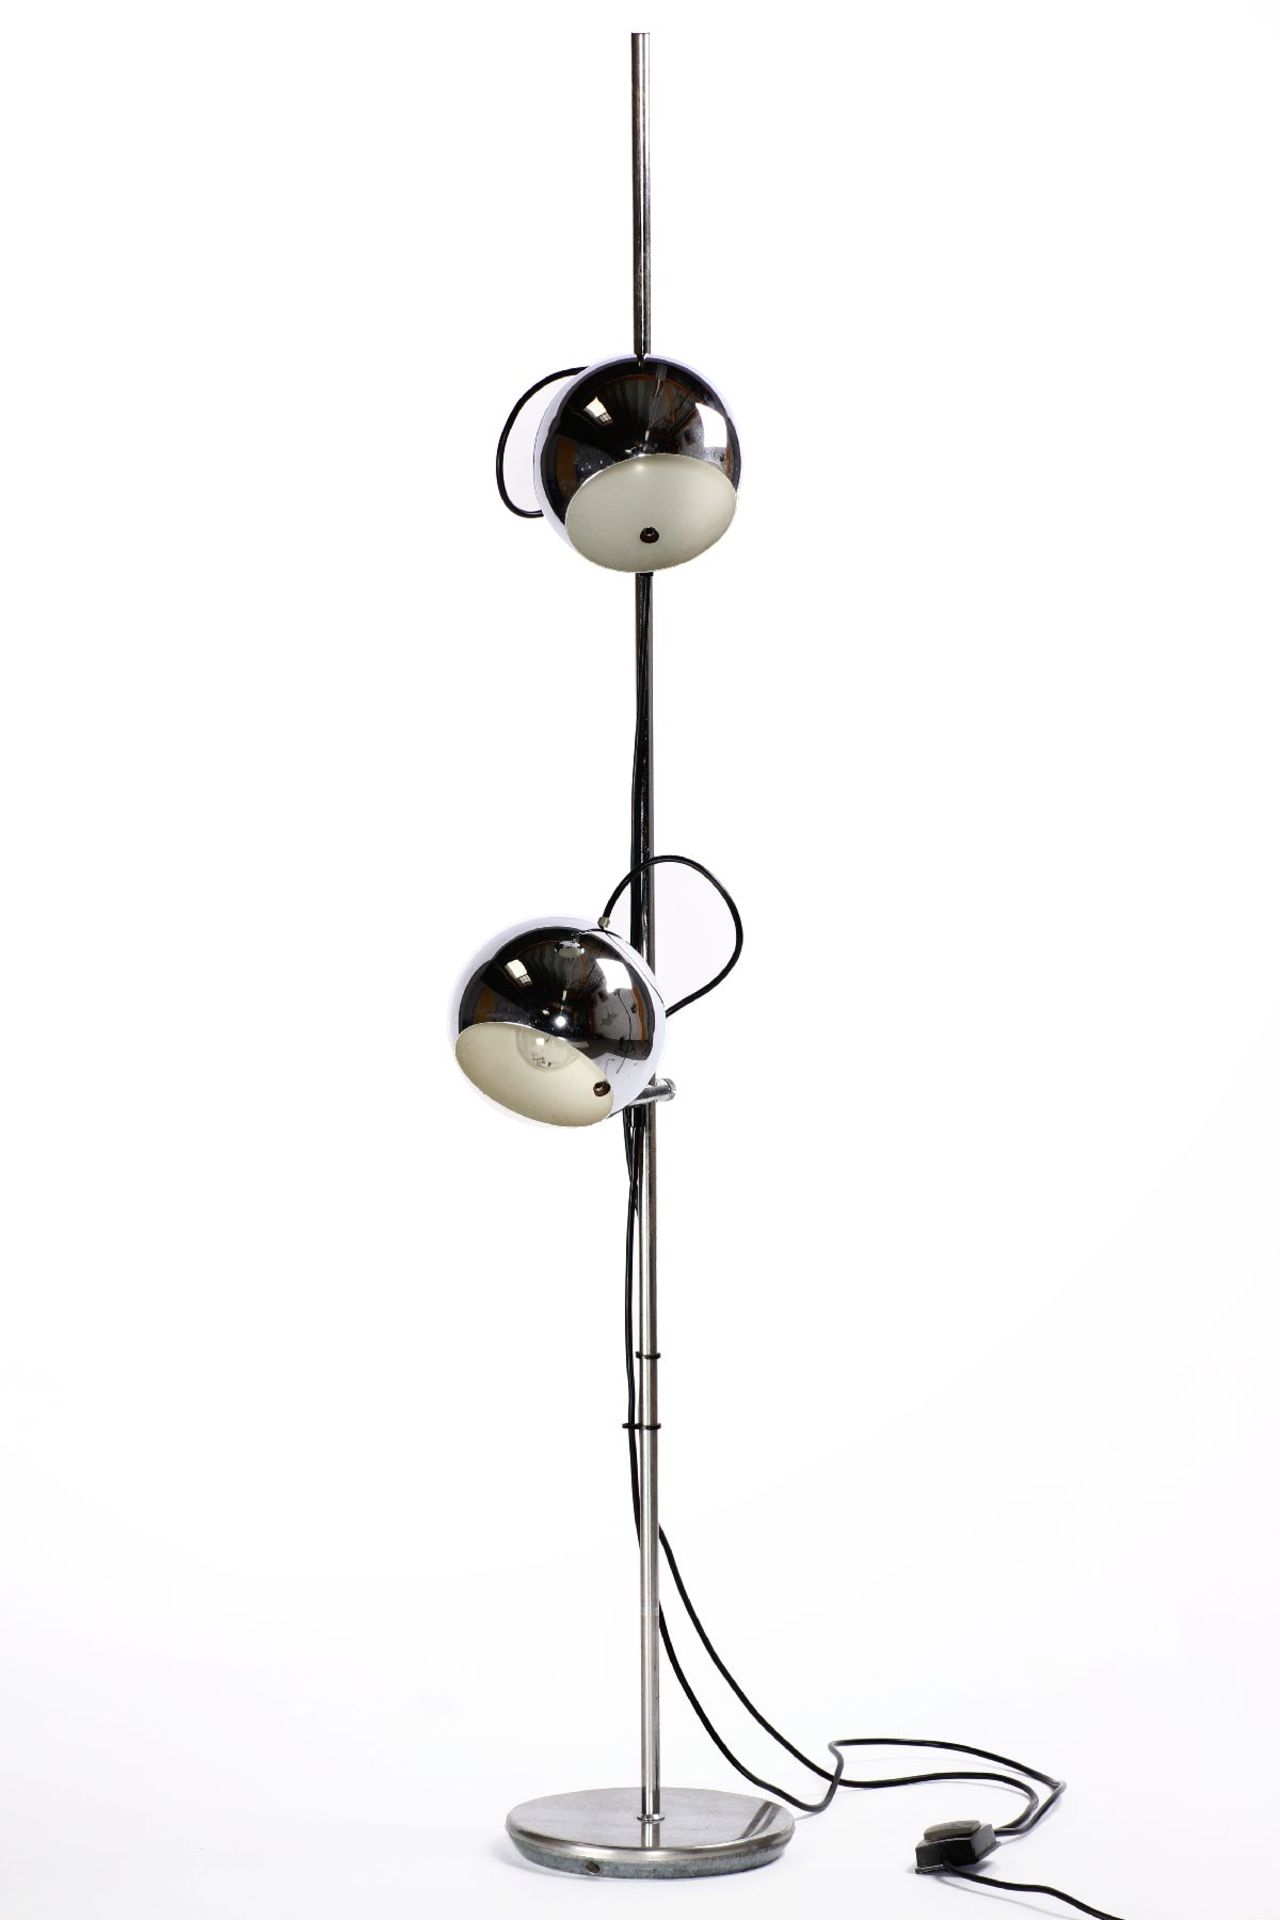 Stehlampe, Gestell und Schirme Metall verchromt, 2 Kugelschirme an Kugelgelenk, höhenverstellbar,